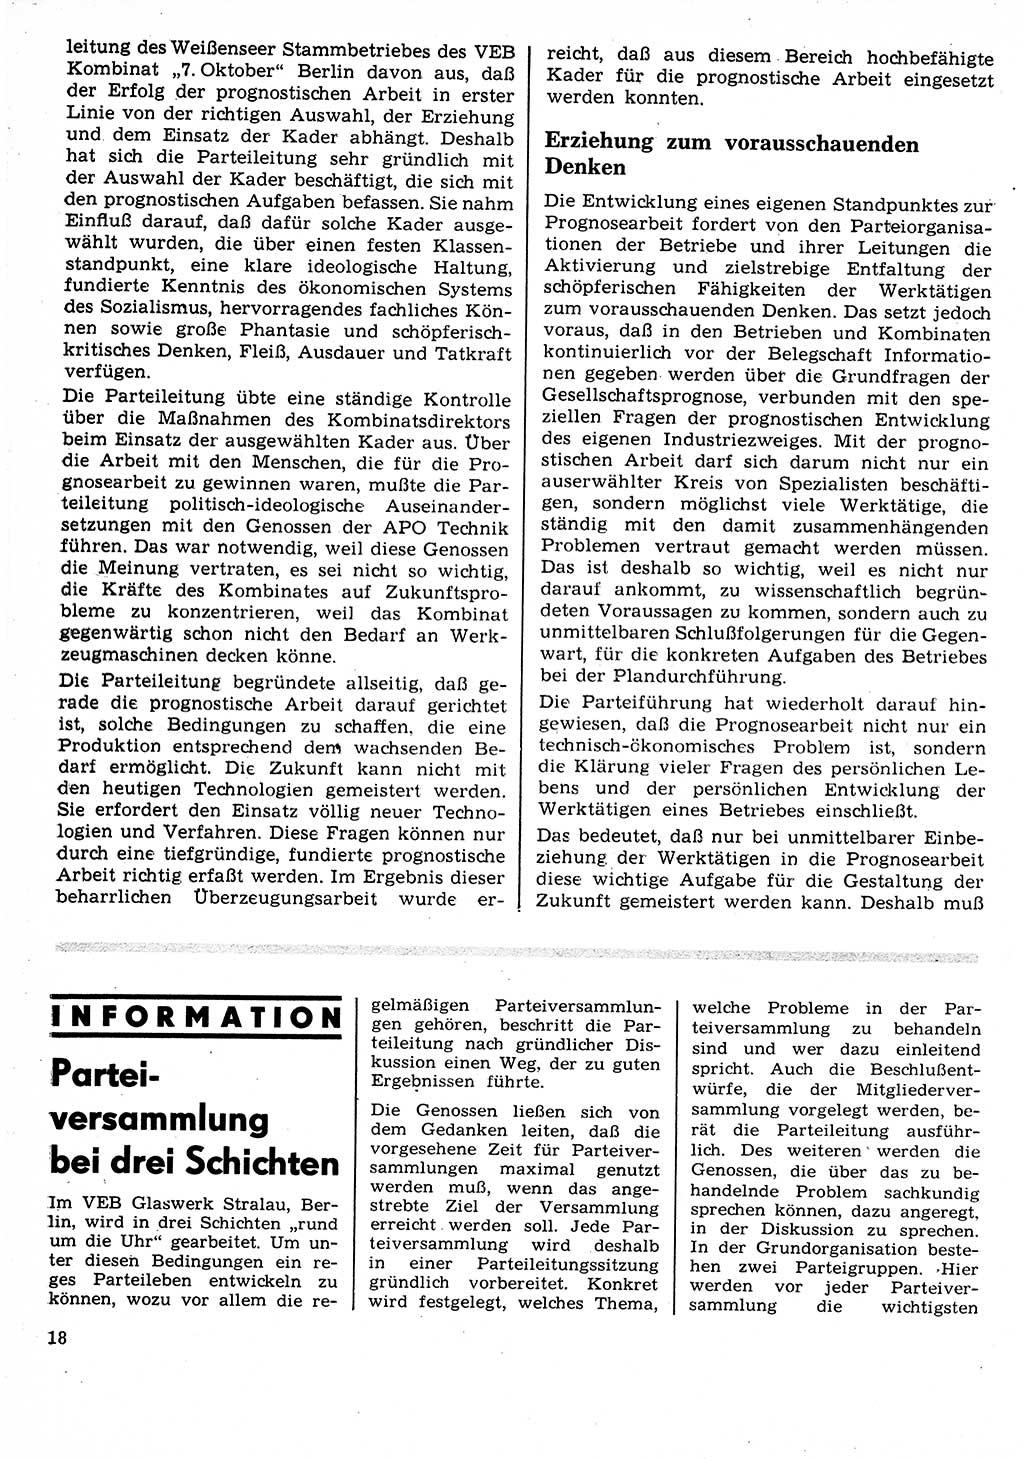 Neuer Weg (NW), Organ des Zentralkomitees (ZK) der SED (Sozialistische Einheitspartei Deutschlands) für Fragen des Parteilebens, 25. Jahrgang [Deutsche Demokratische Republik (DDR)] 1970, Seite 18 (NW ZK SED DDR 1970, S. 18)